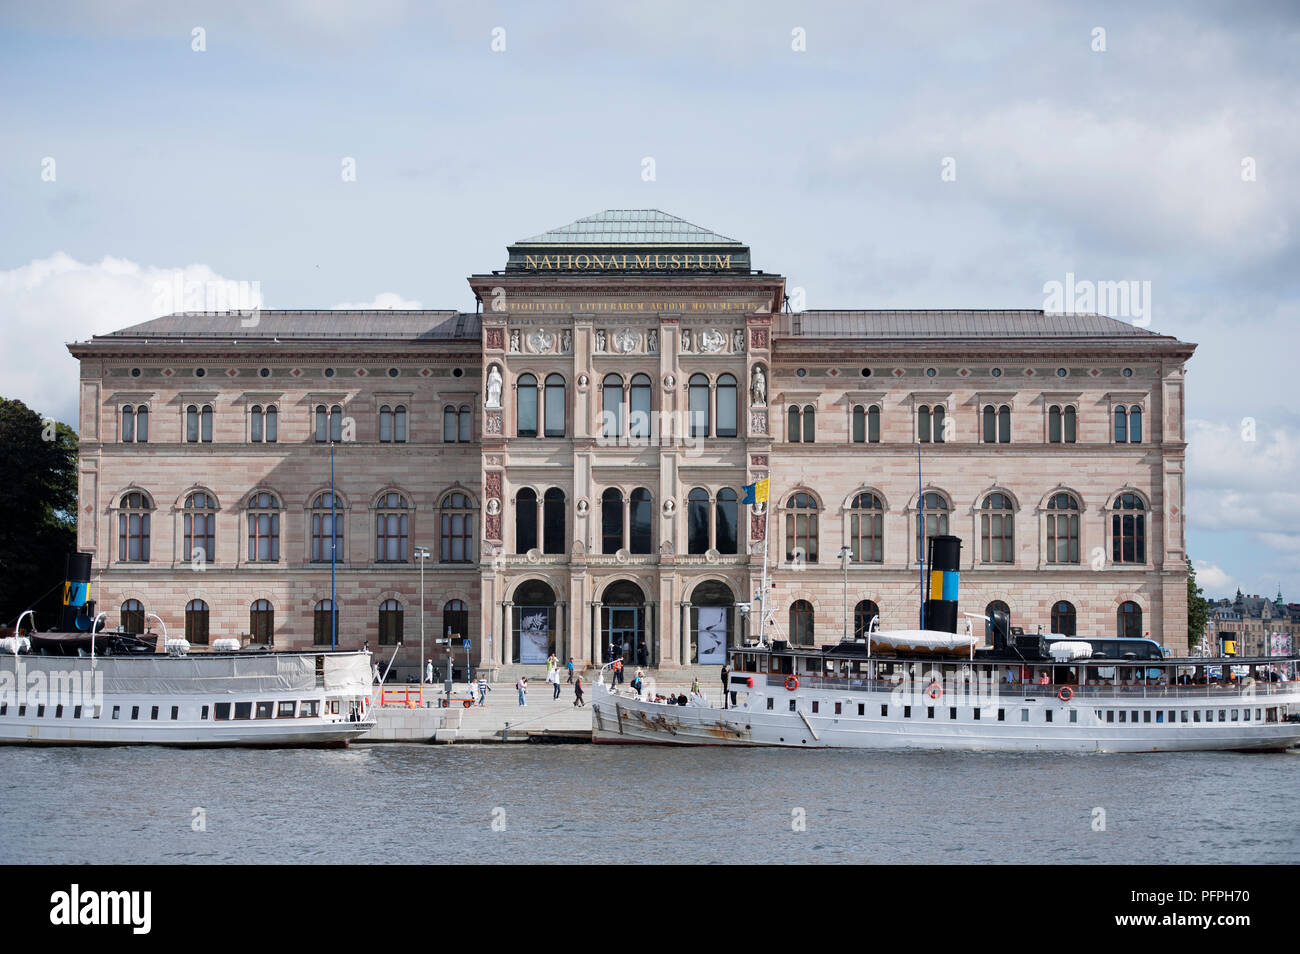 La Suède, Stockholm, Nationalmuseum (Musée national des beaux-arts), extérieur Banque D'Images